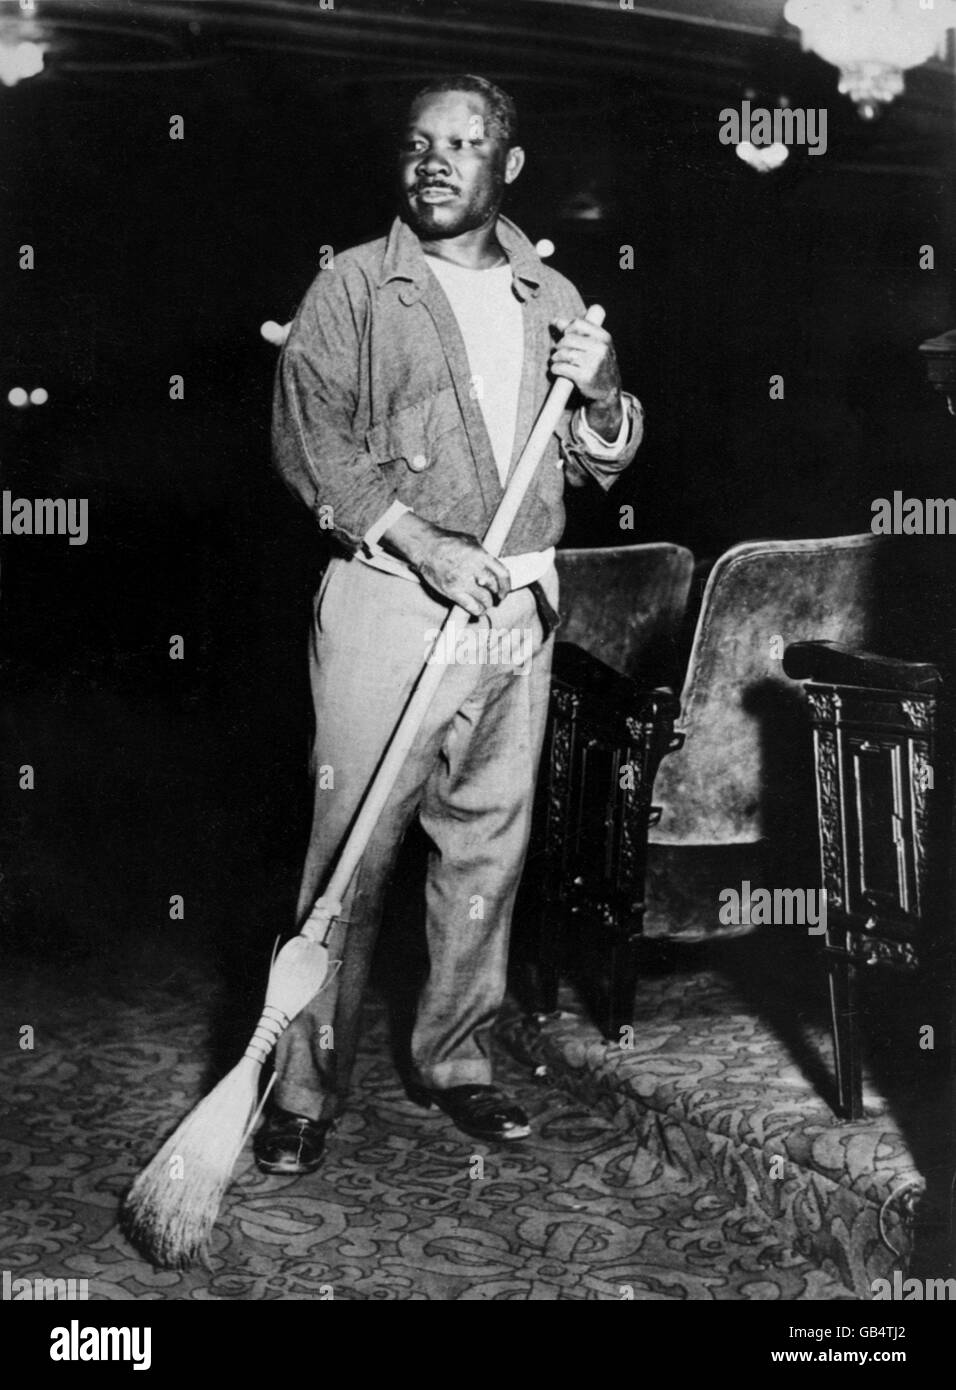 Der ehemalige Weltmeister Joe Walcott, einer der größten Pfund-für-Pfund-Kämpfer aller Zeiten, fegt im Imperial Theatre, New York. Stockfoto